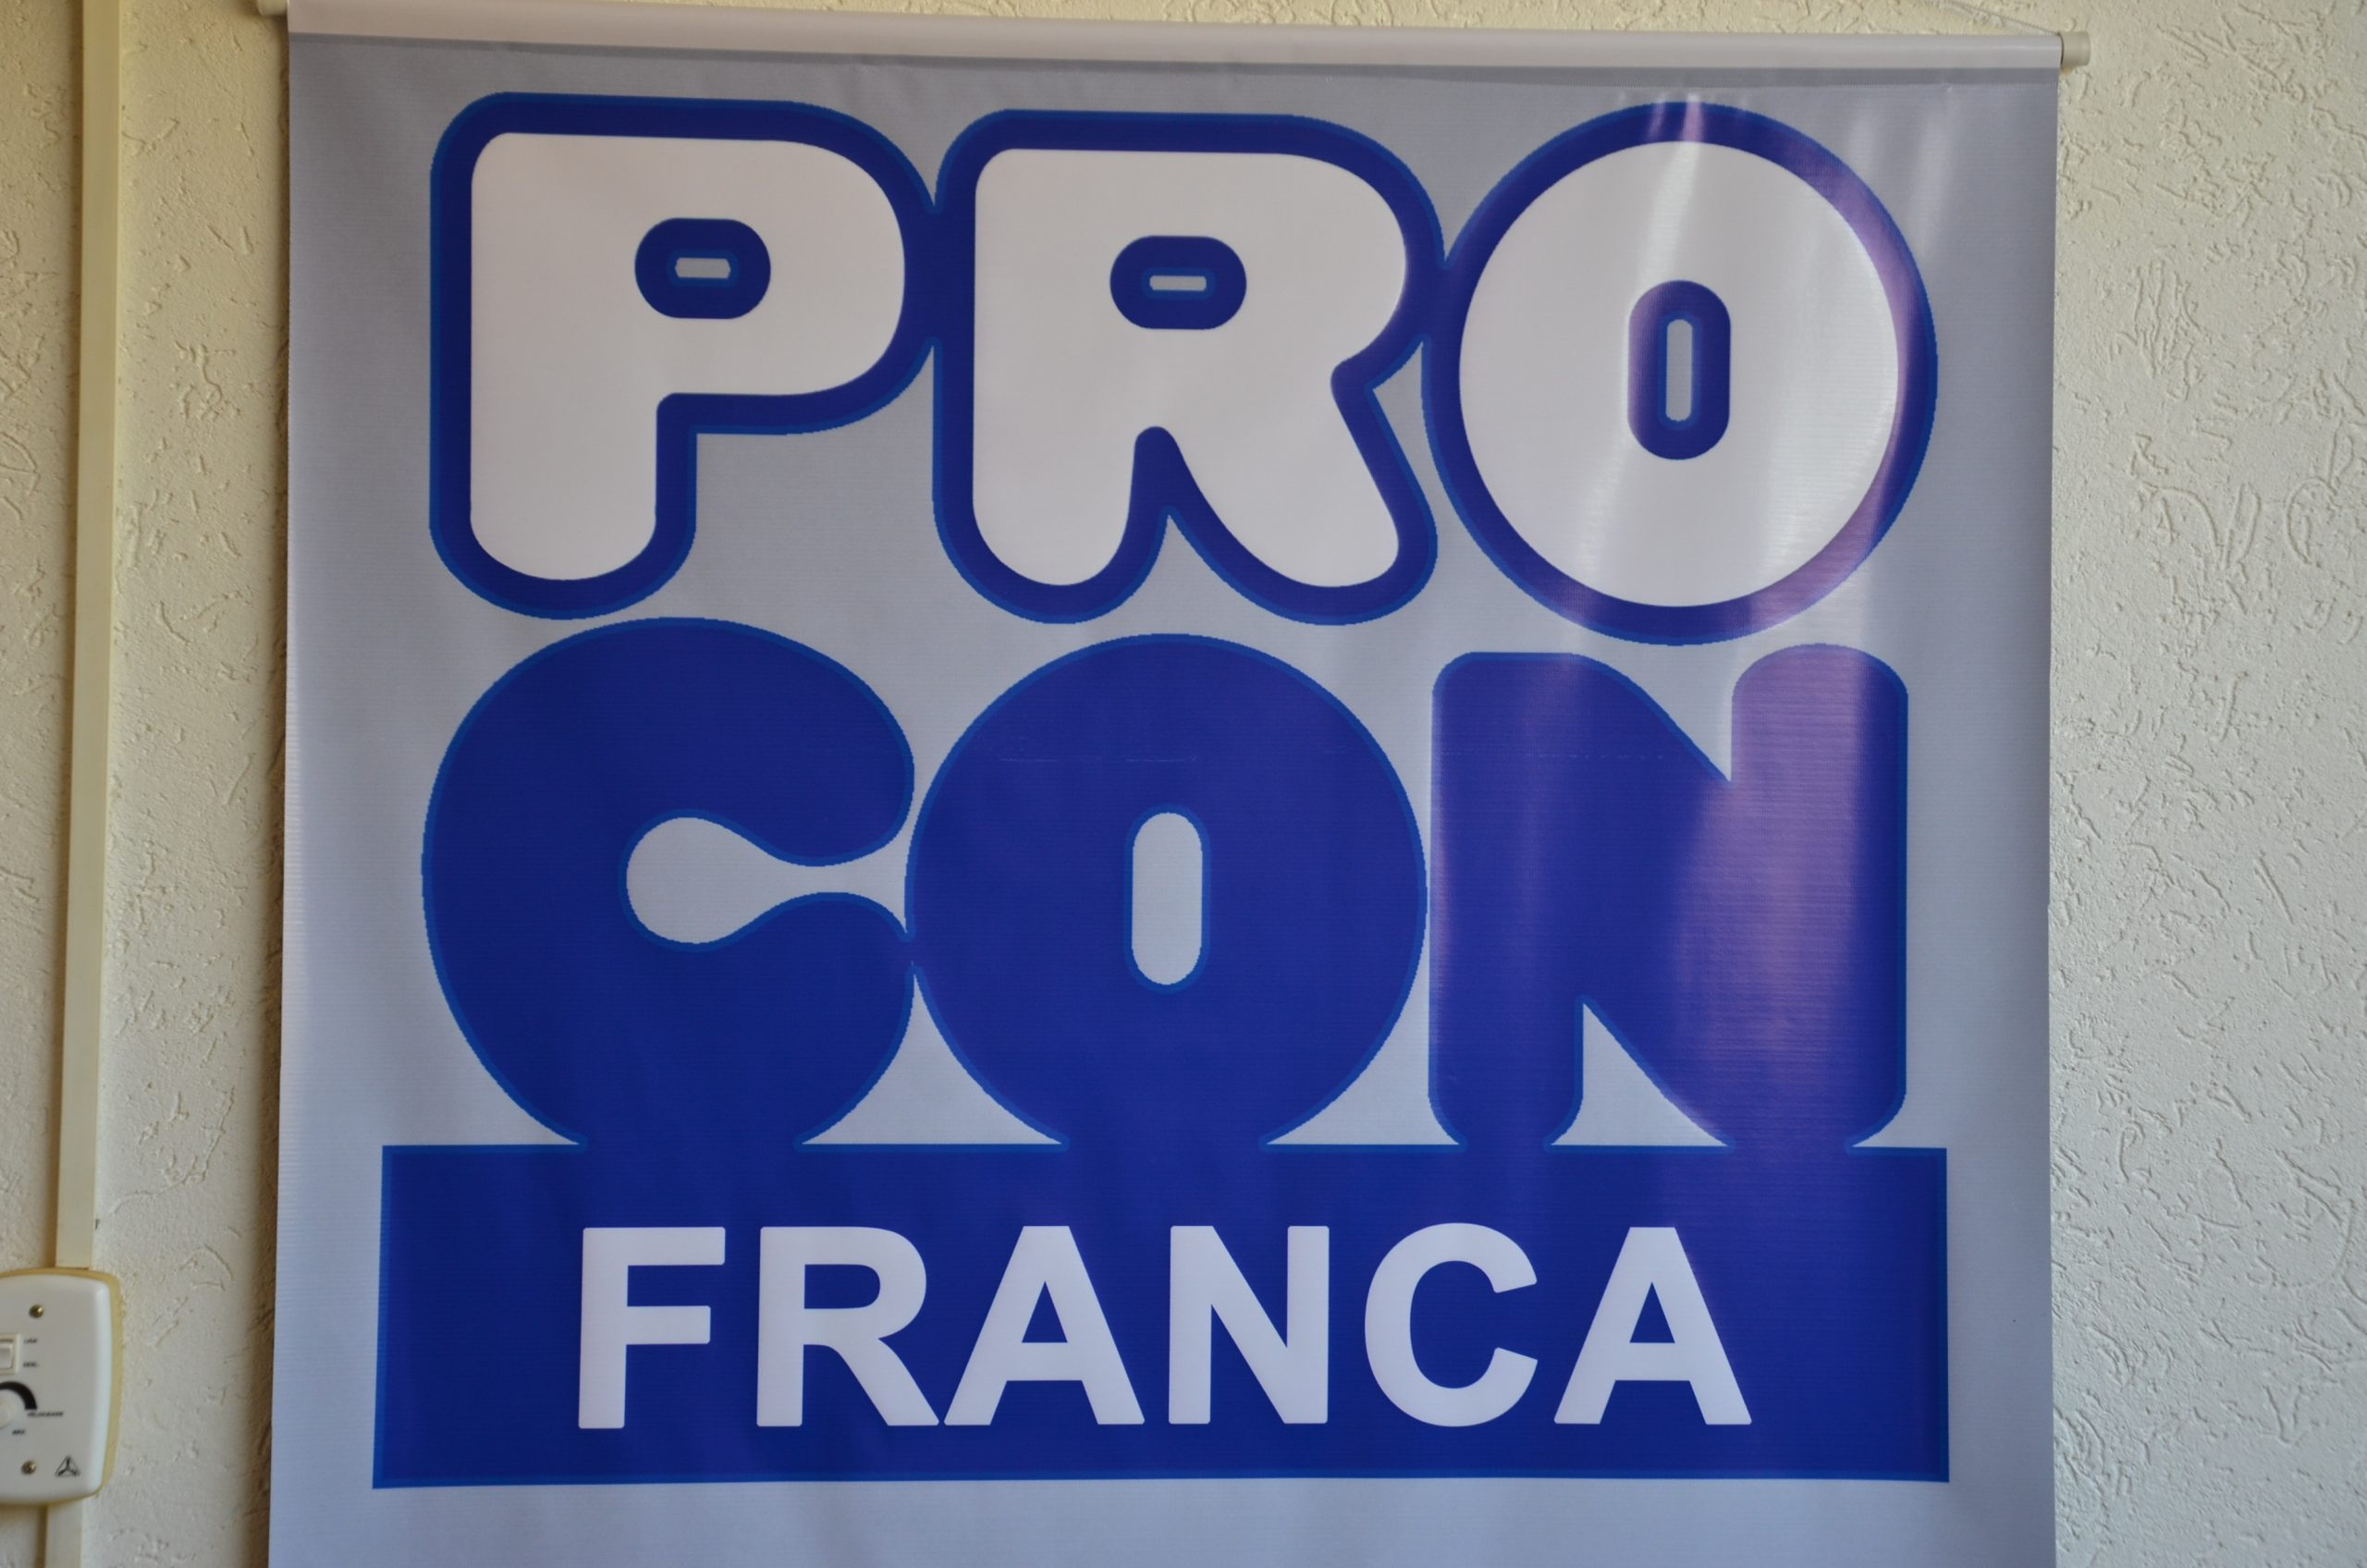 Procon Franca original